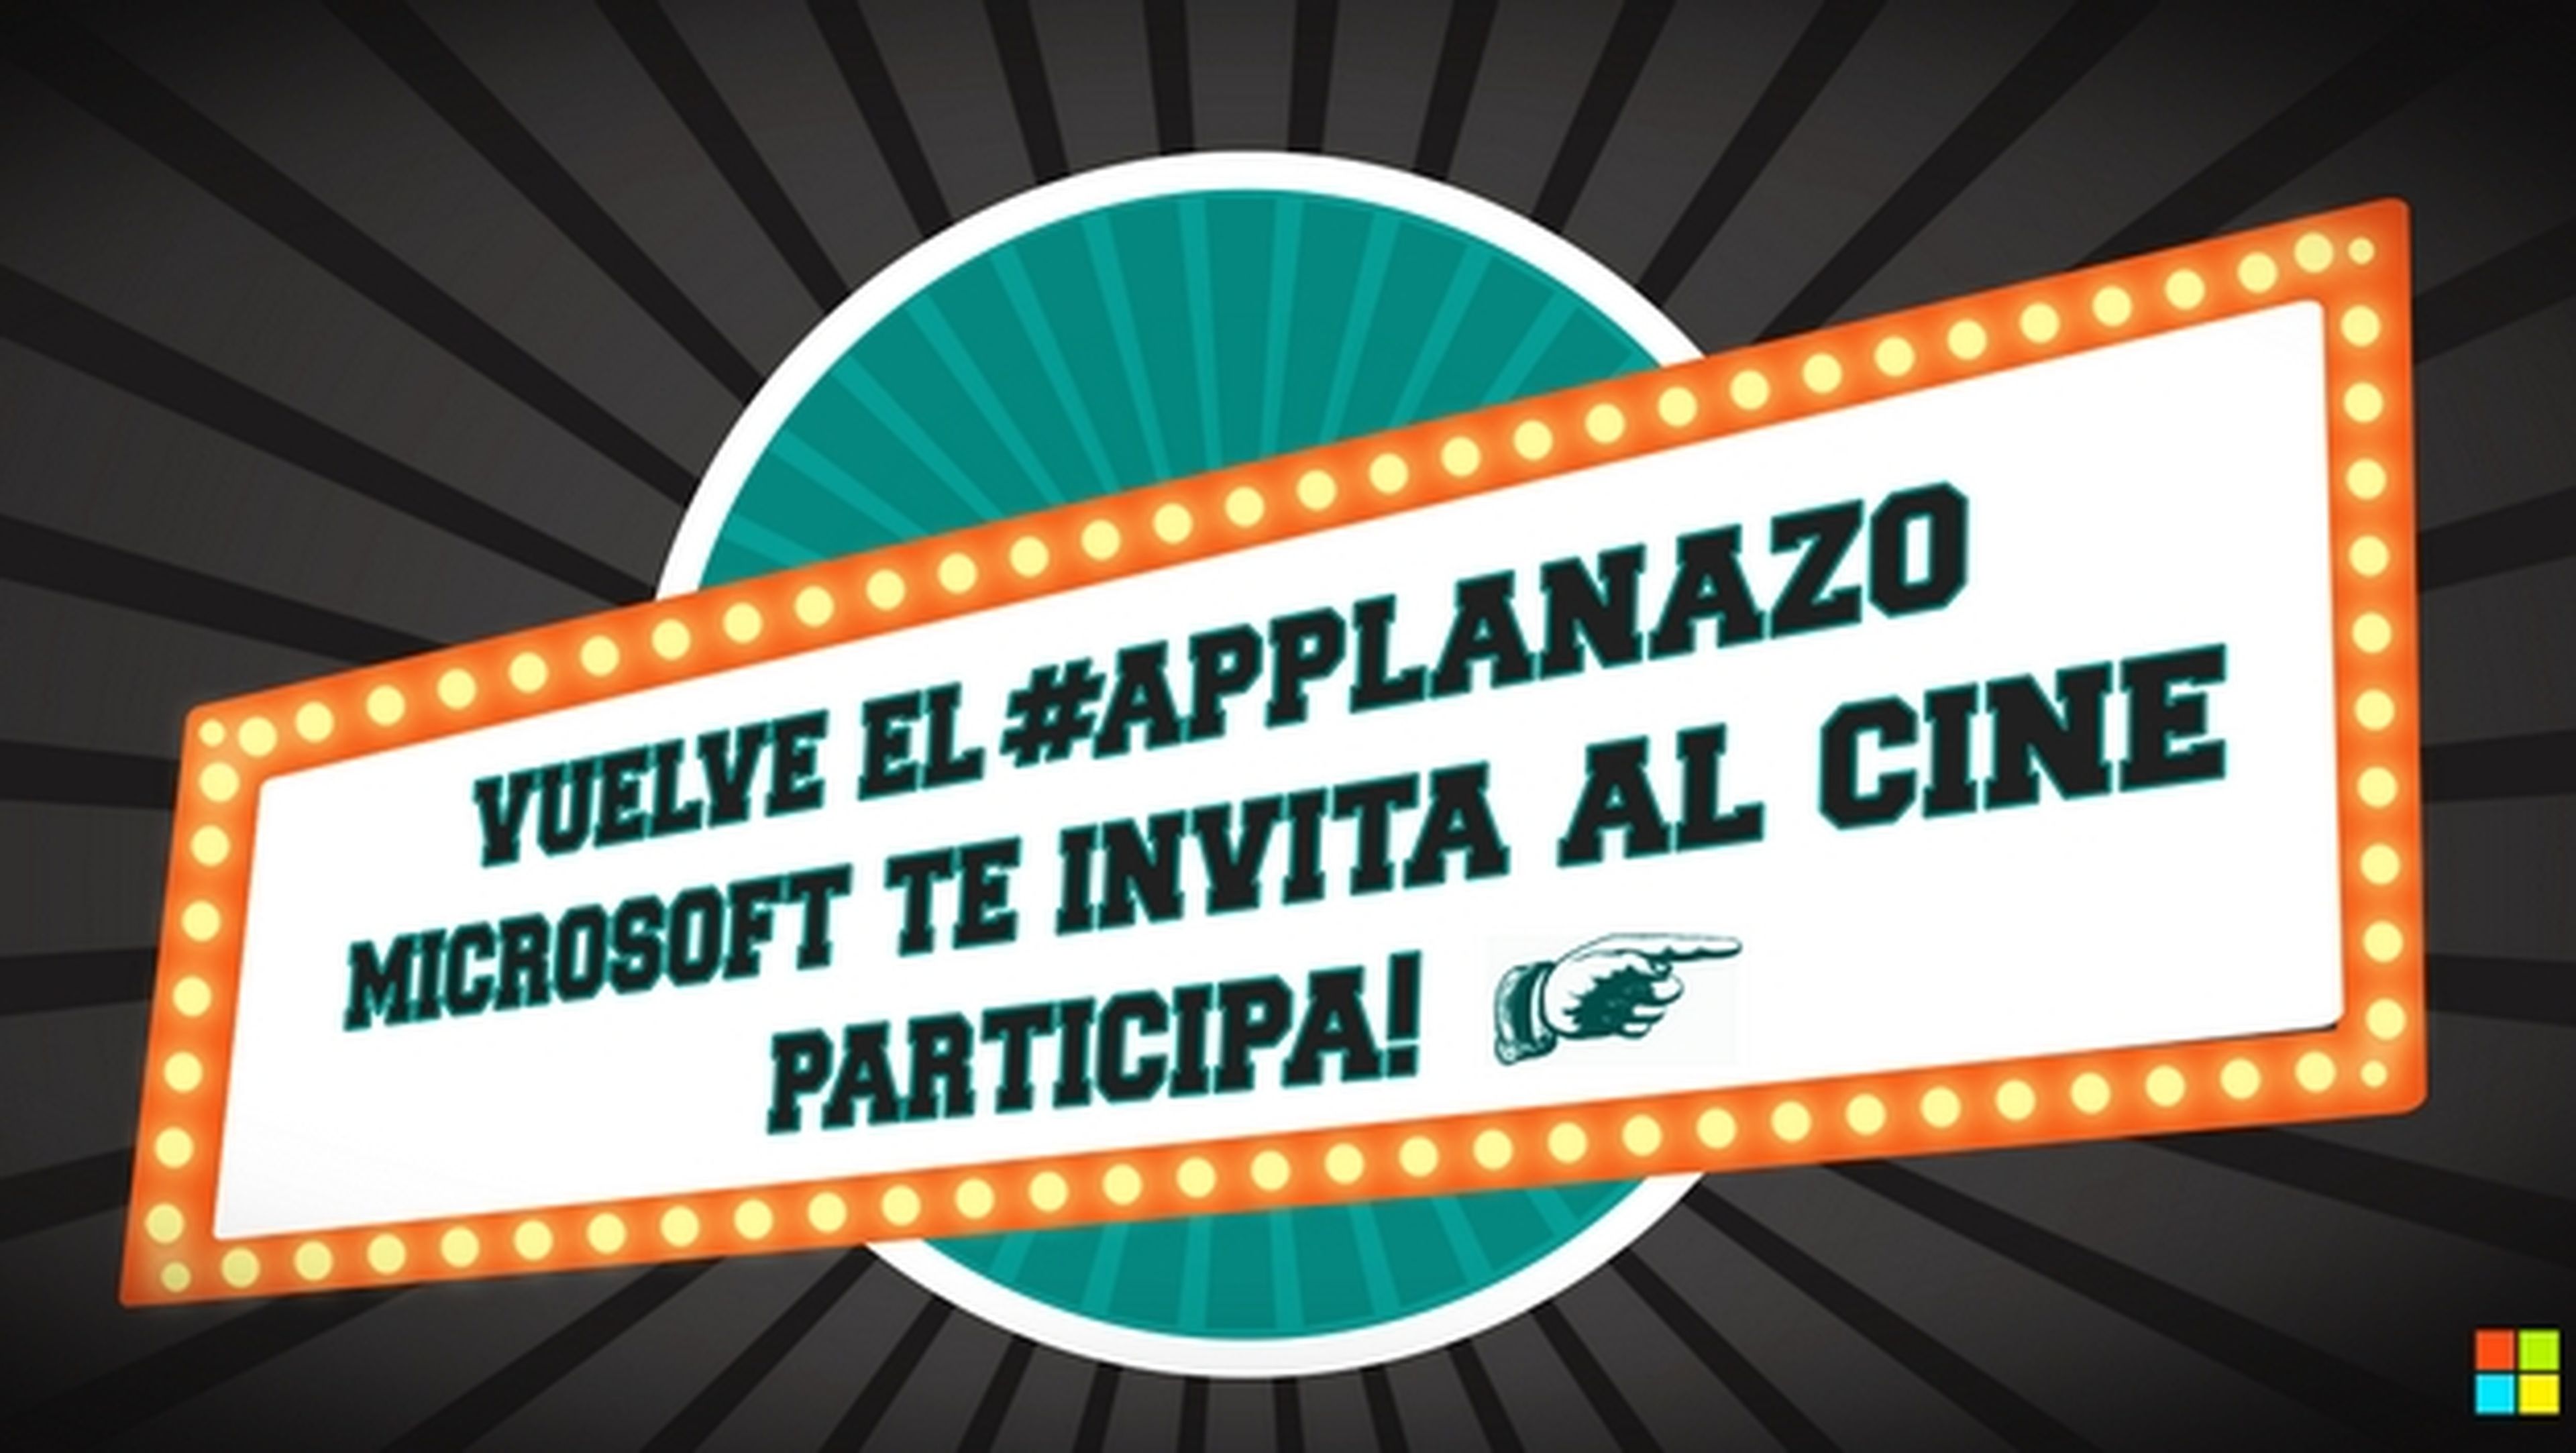 Microsoft ofrece entradas de cine gratis con Windows Phone y la promoción #applanazo